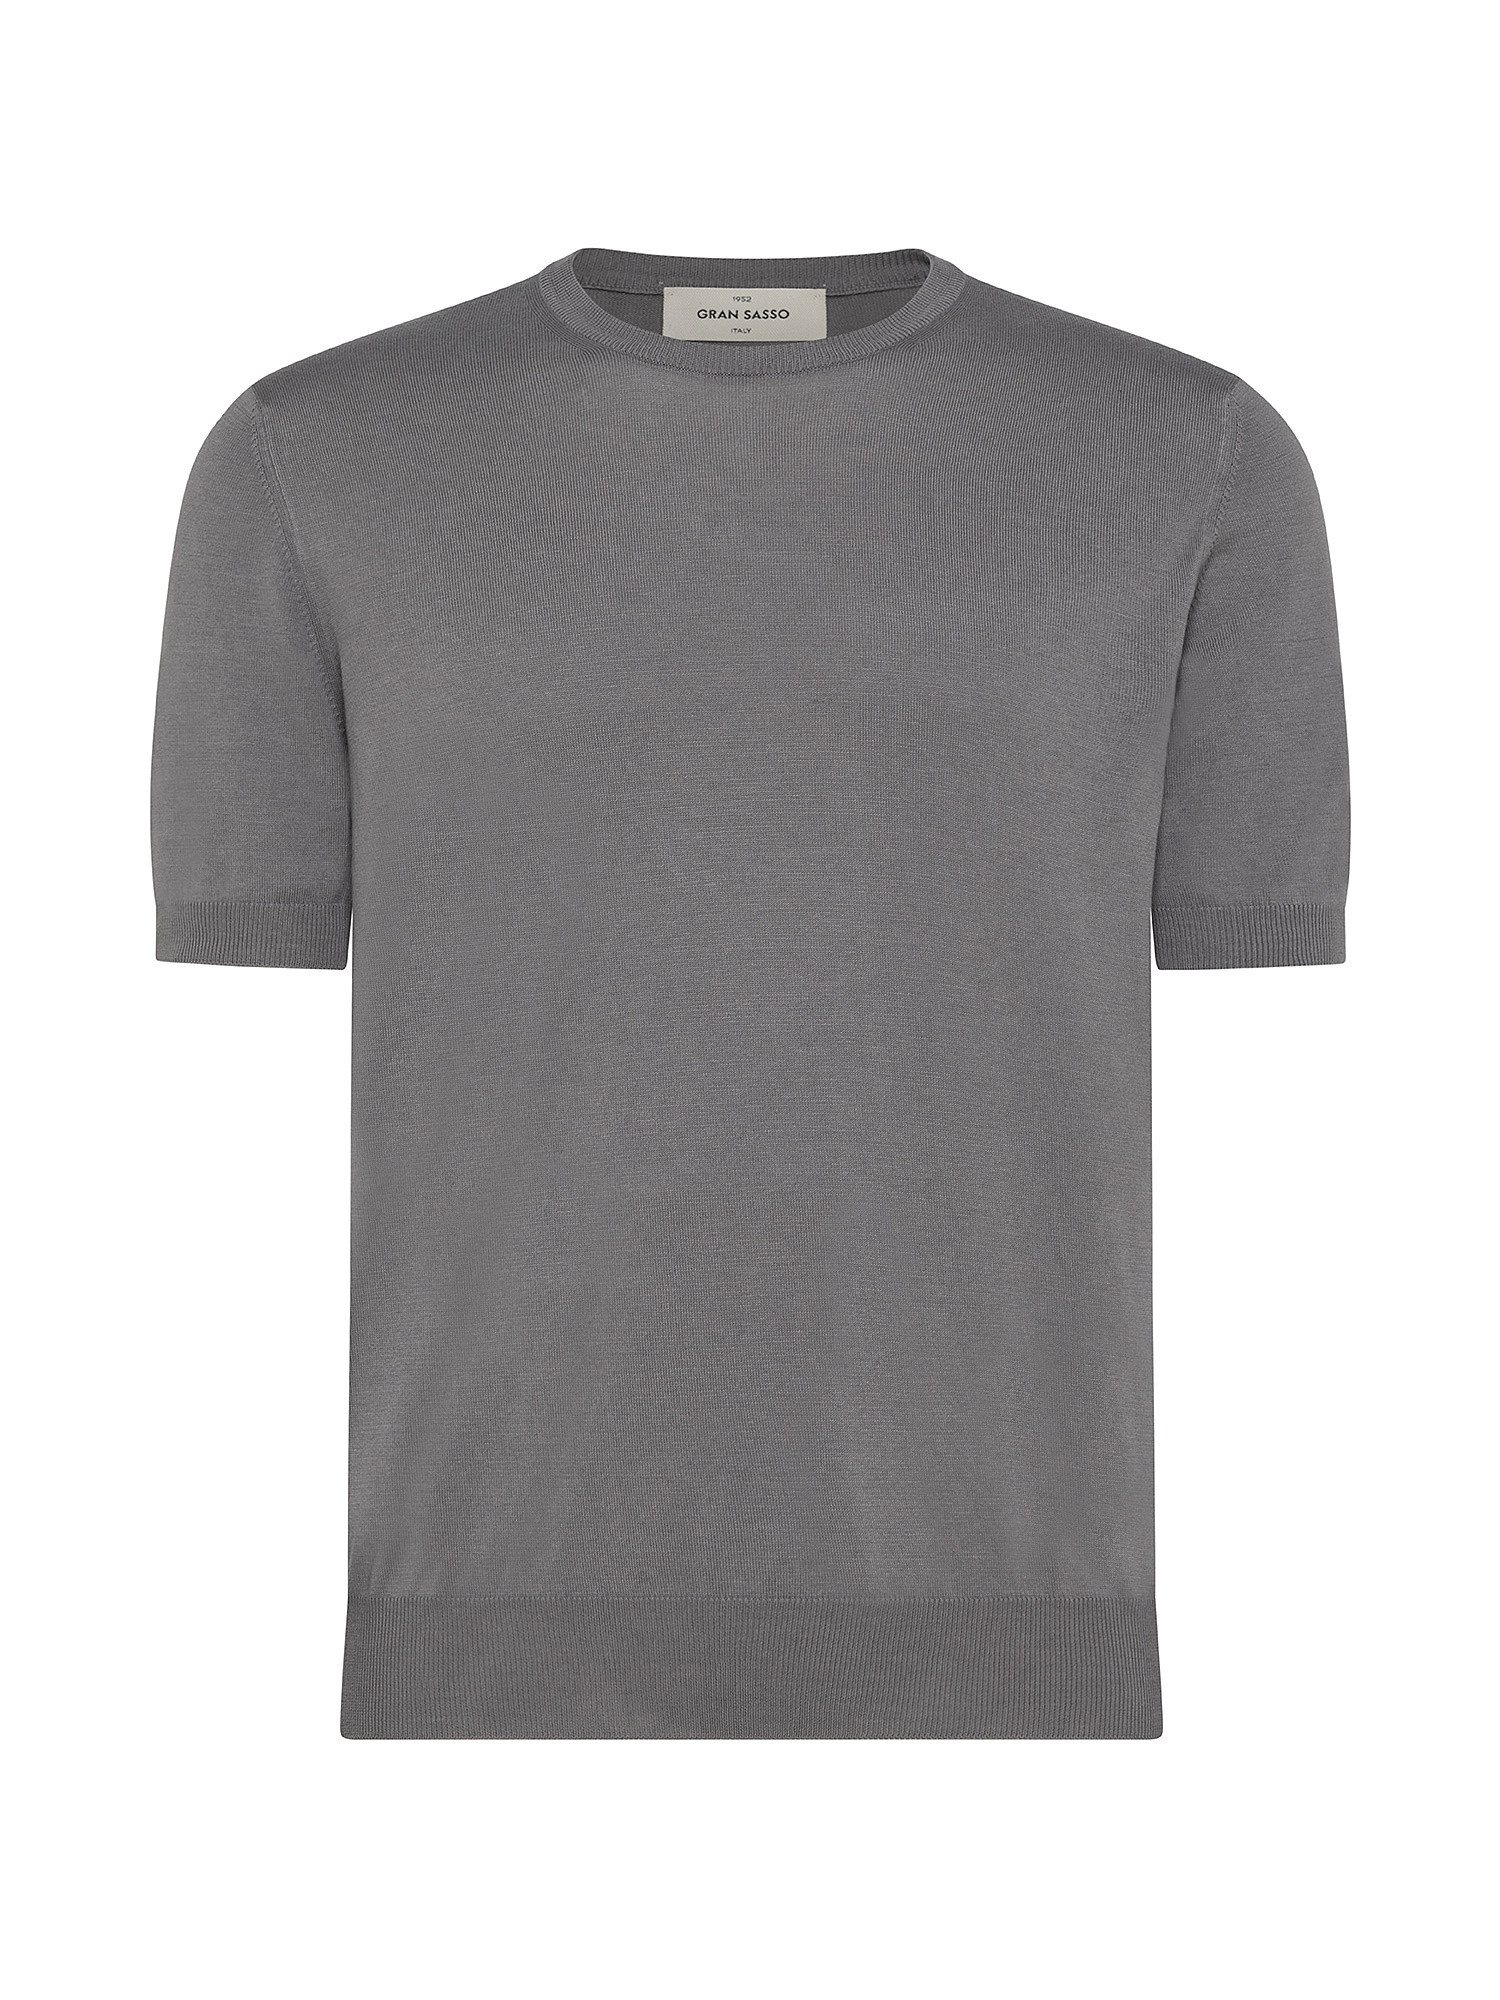 T-shirt in maglia a maniche corte in sottile cotone organico biologico effetto Vintage, Grigio tortora, large image number 0